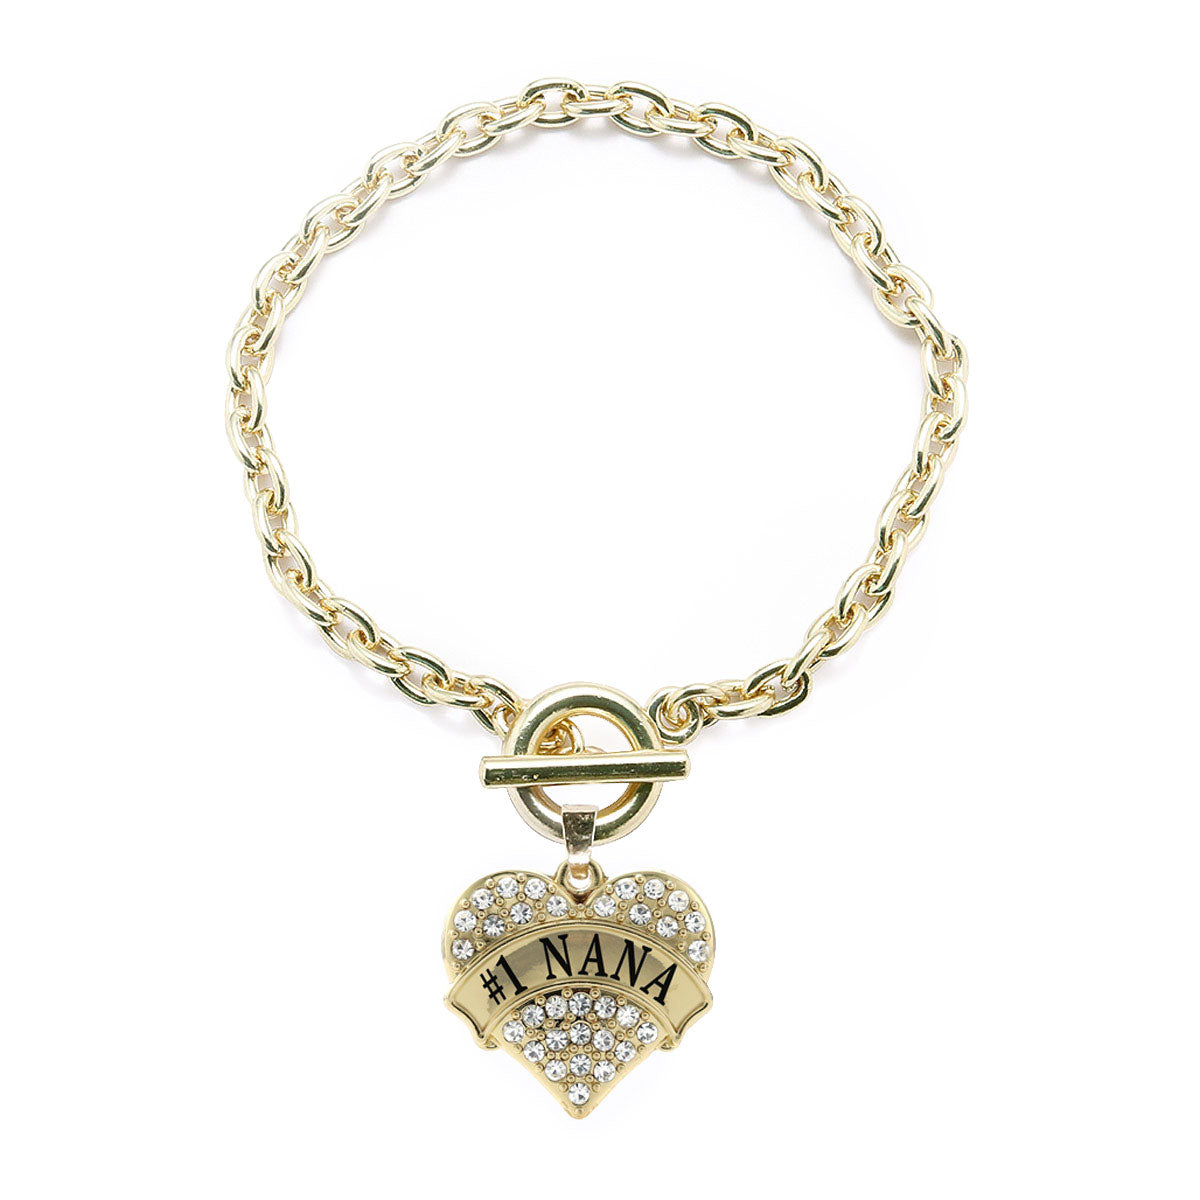 Gold #1 Nana Pave Heart Charm Toggle Bracelet